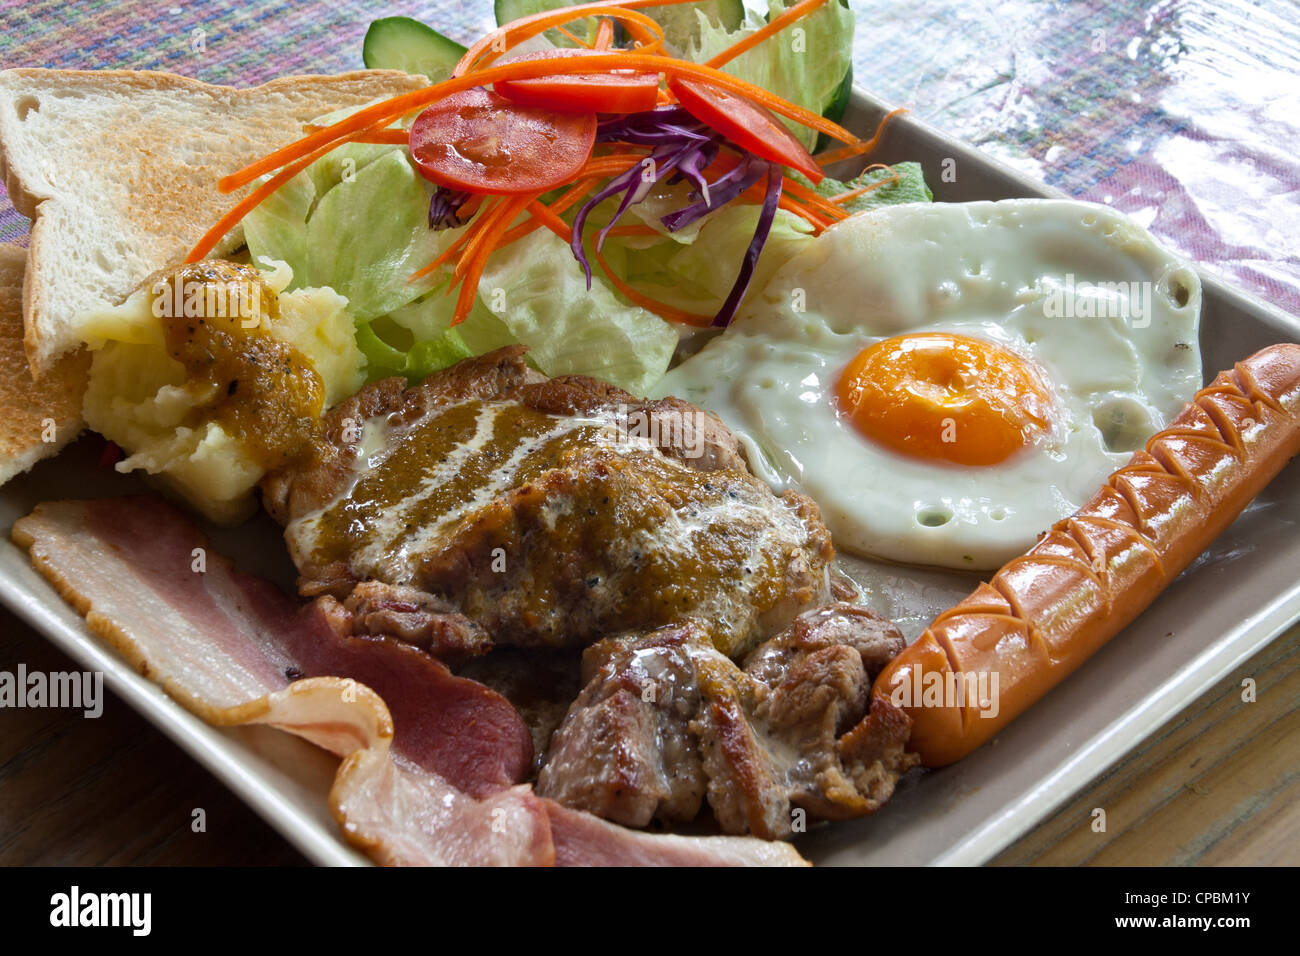 Steak de porc, bacon, œuf frit, de saucisses, de pain et de la salade. Banque D'Images